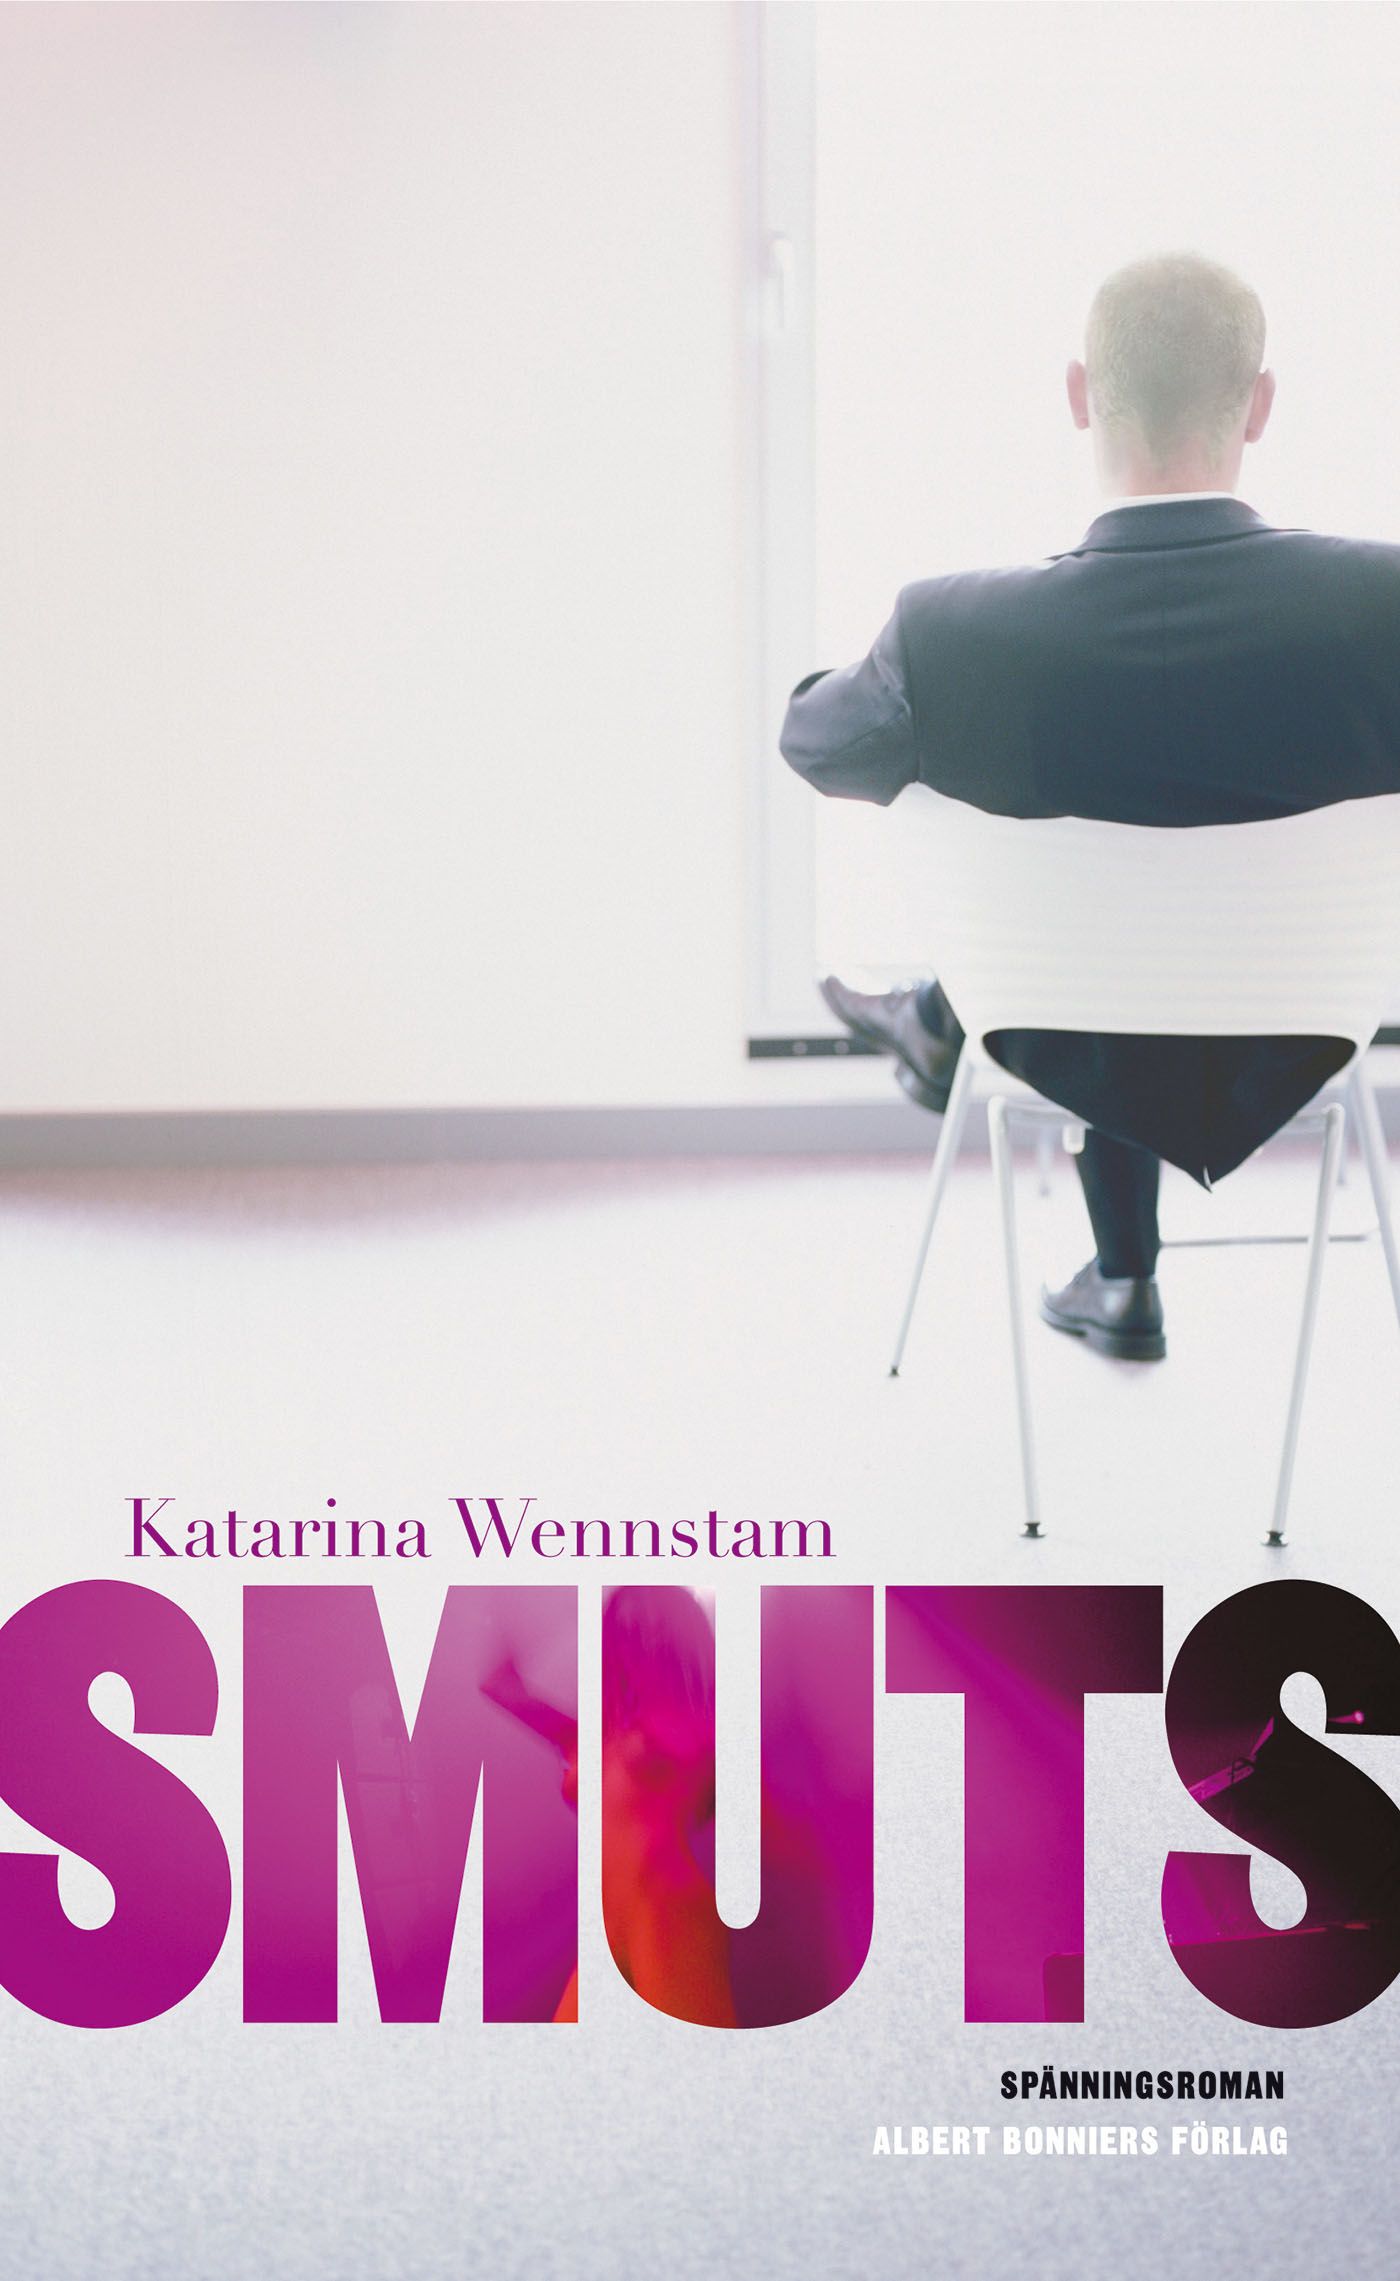 Smuts, eBook by Katarina Wennstam